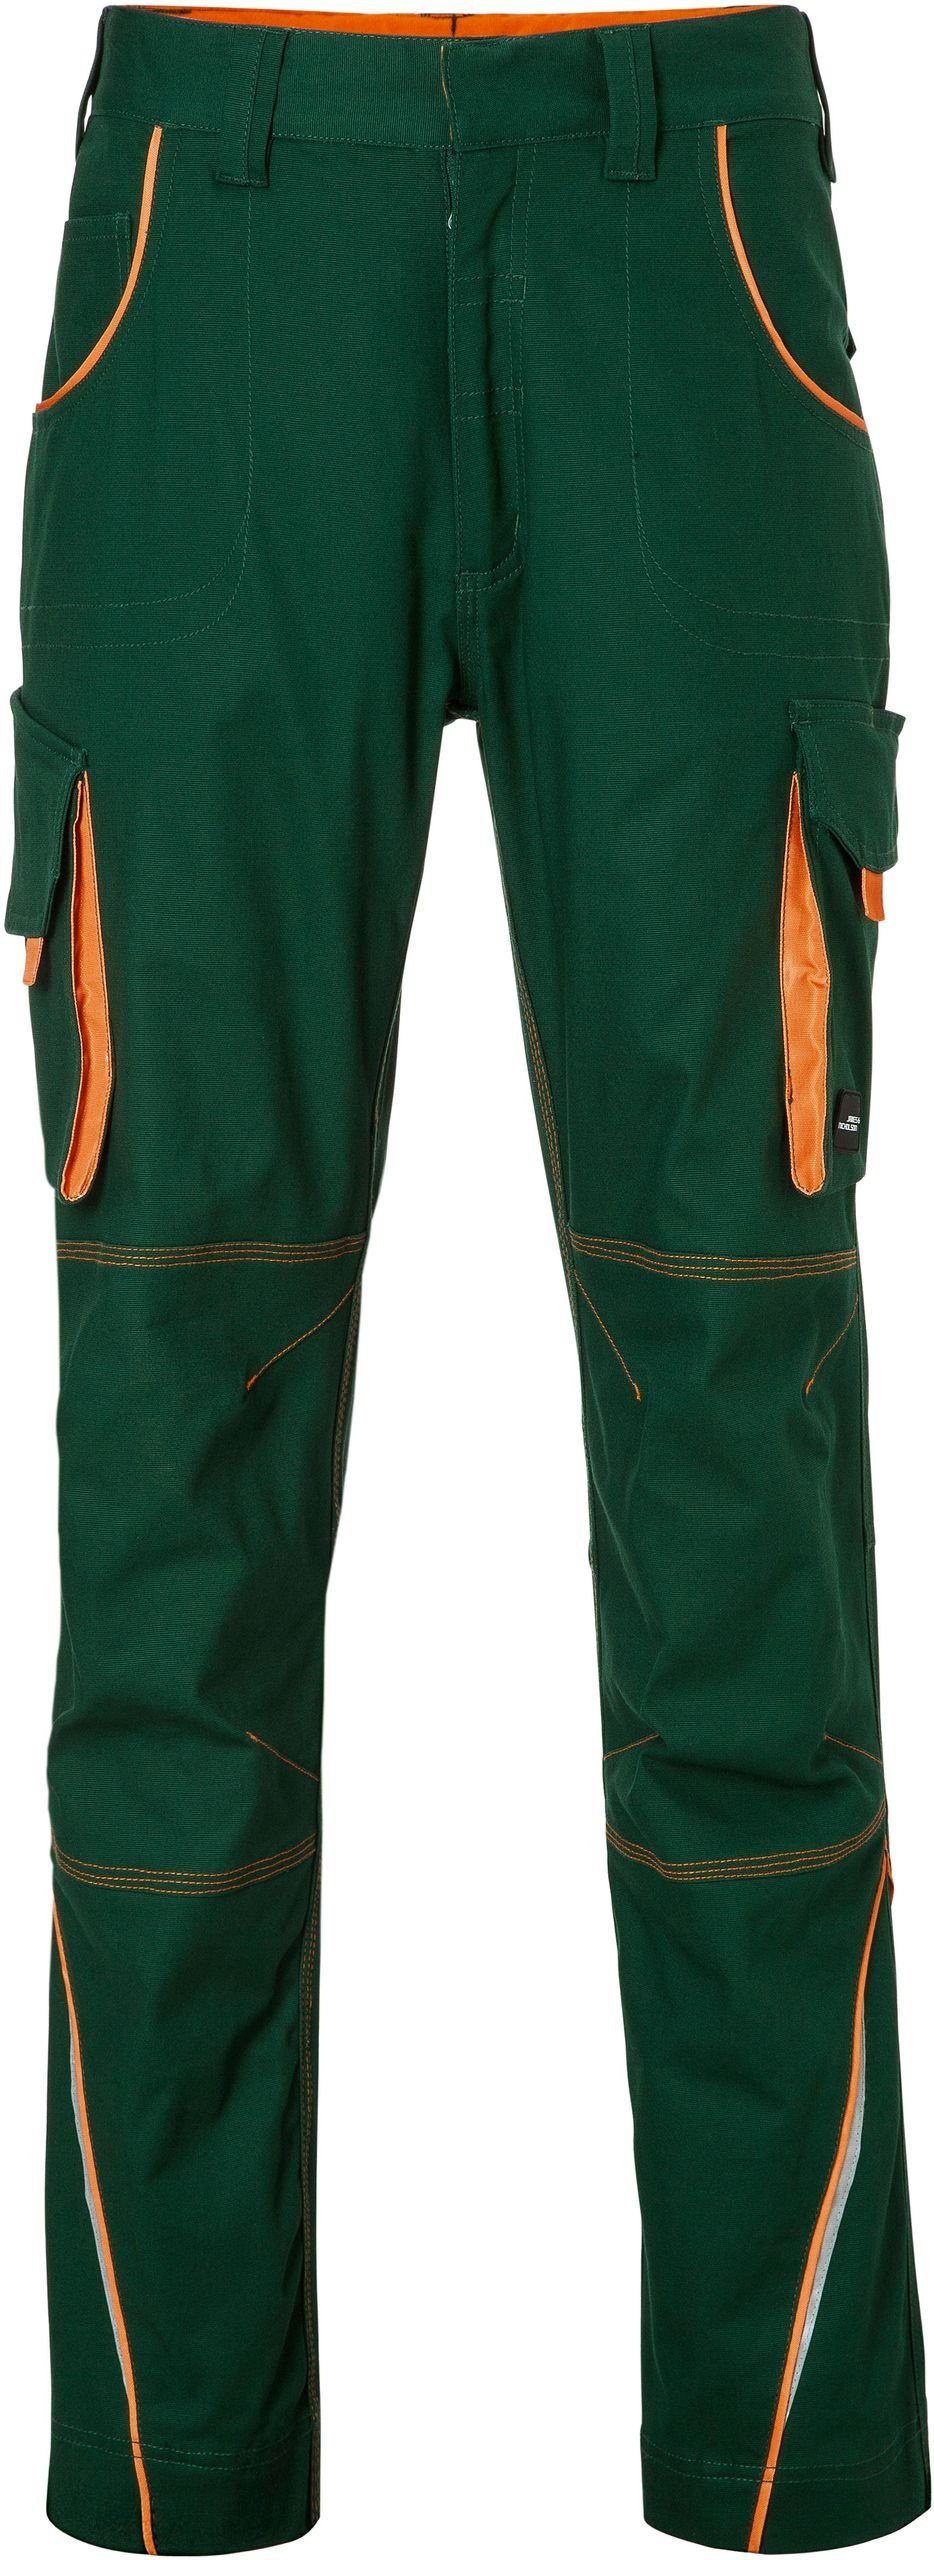 James & Nicholson Workwear green/orange dark Hose Arbeitshose FaS50847